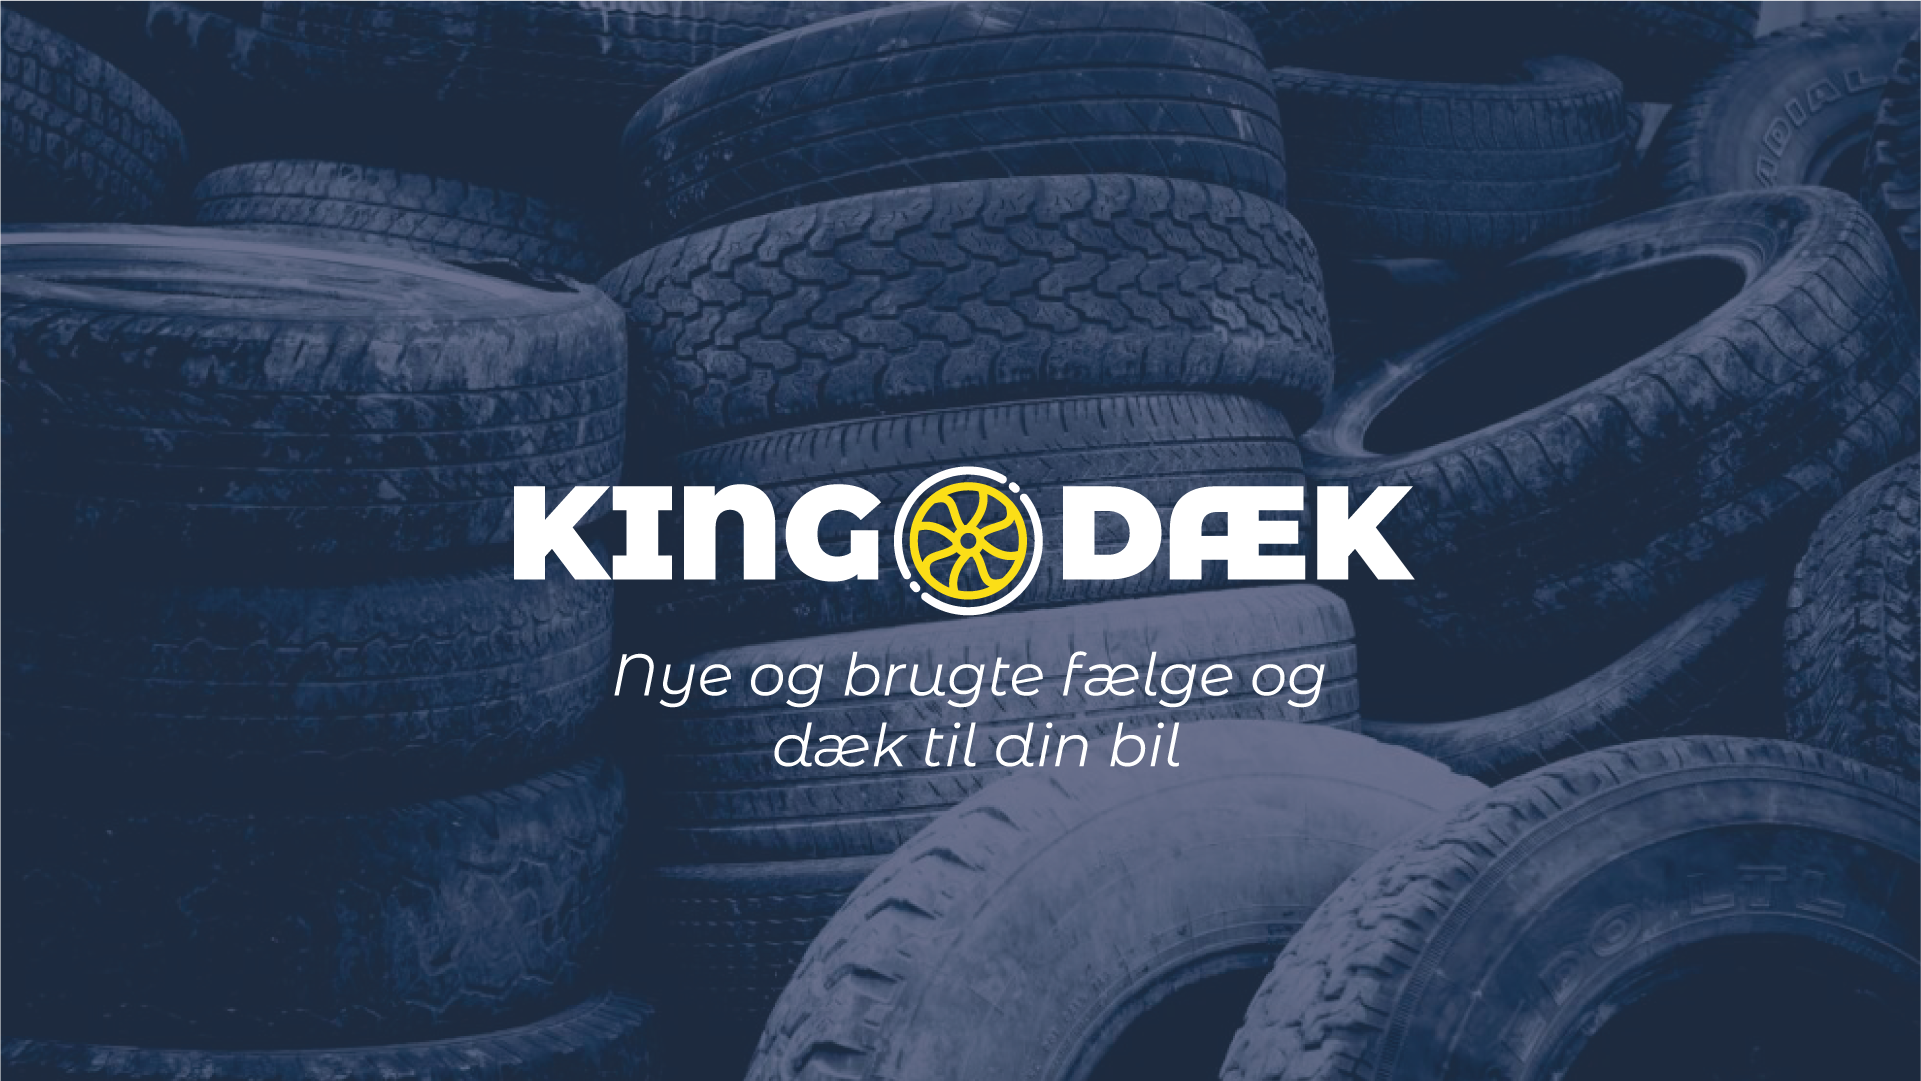 King Dæk Rødovre - Nye og brugte fælge og dæk til din bil